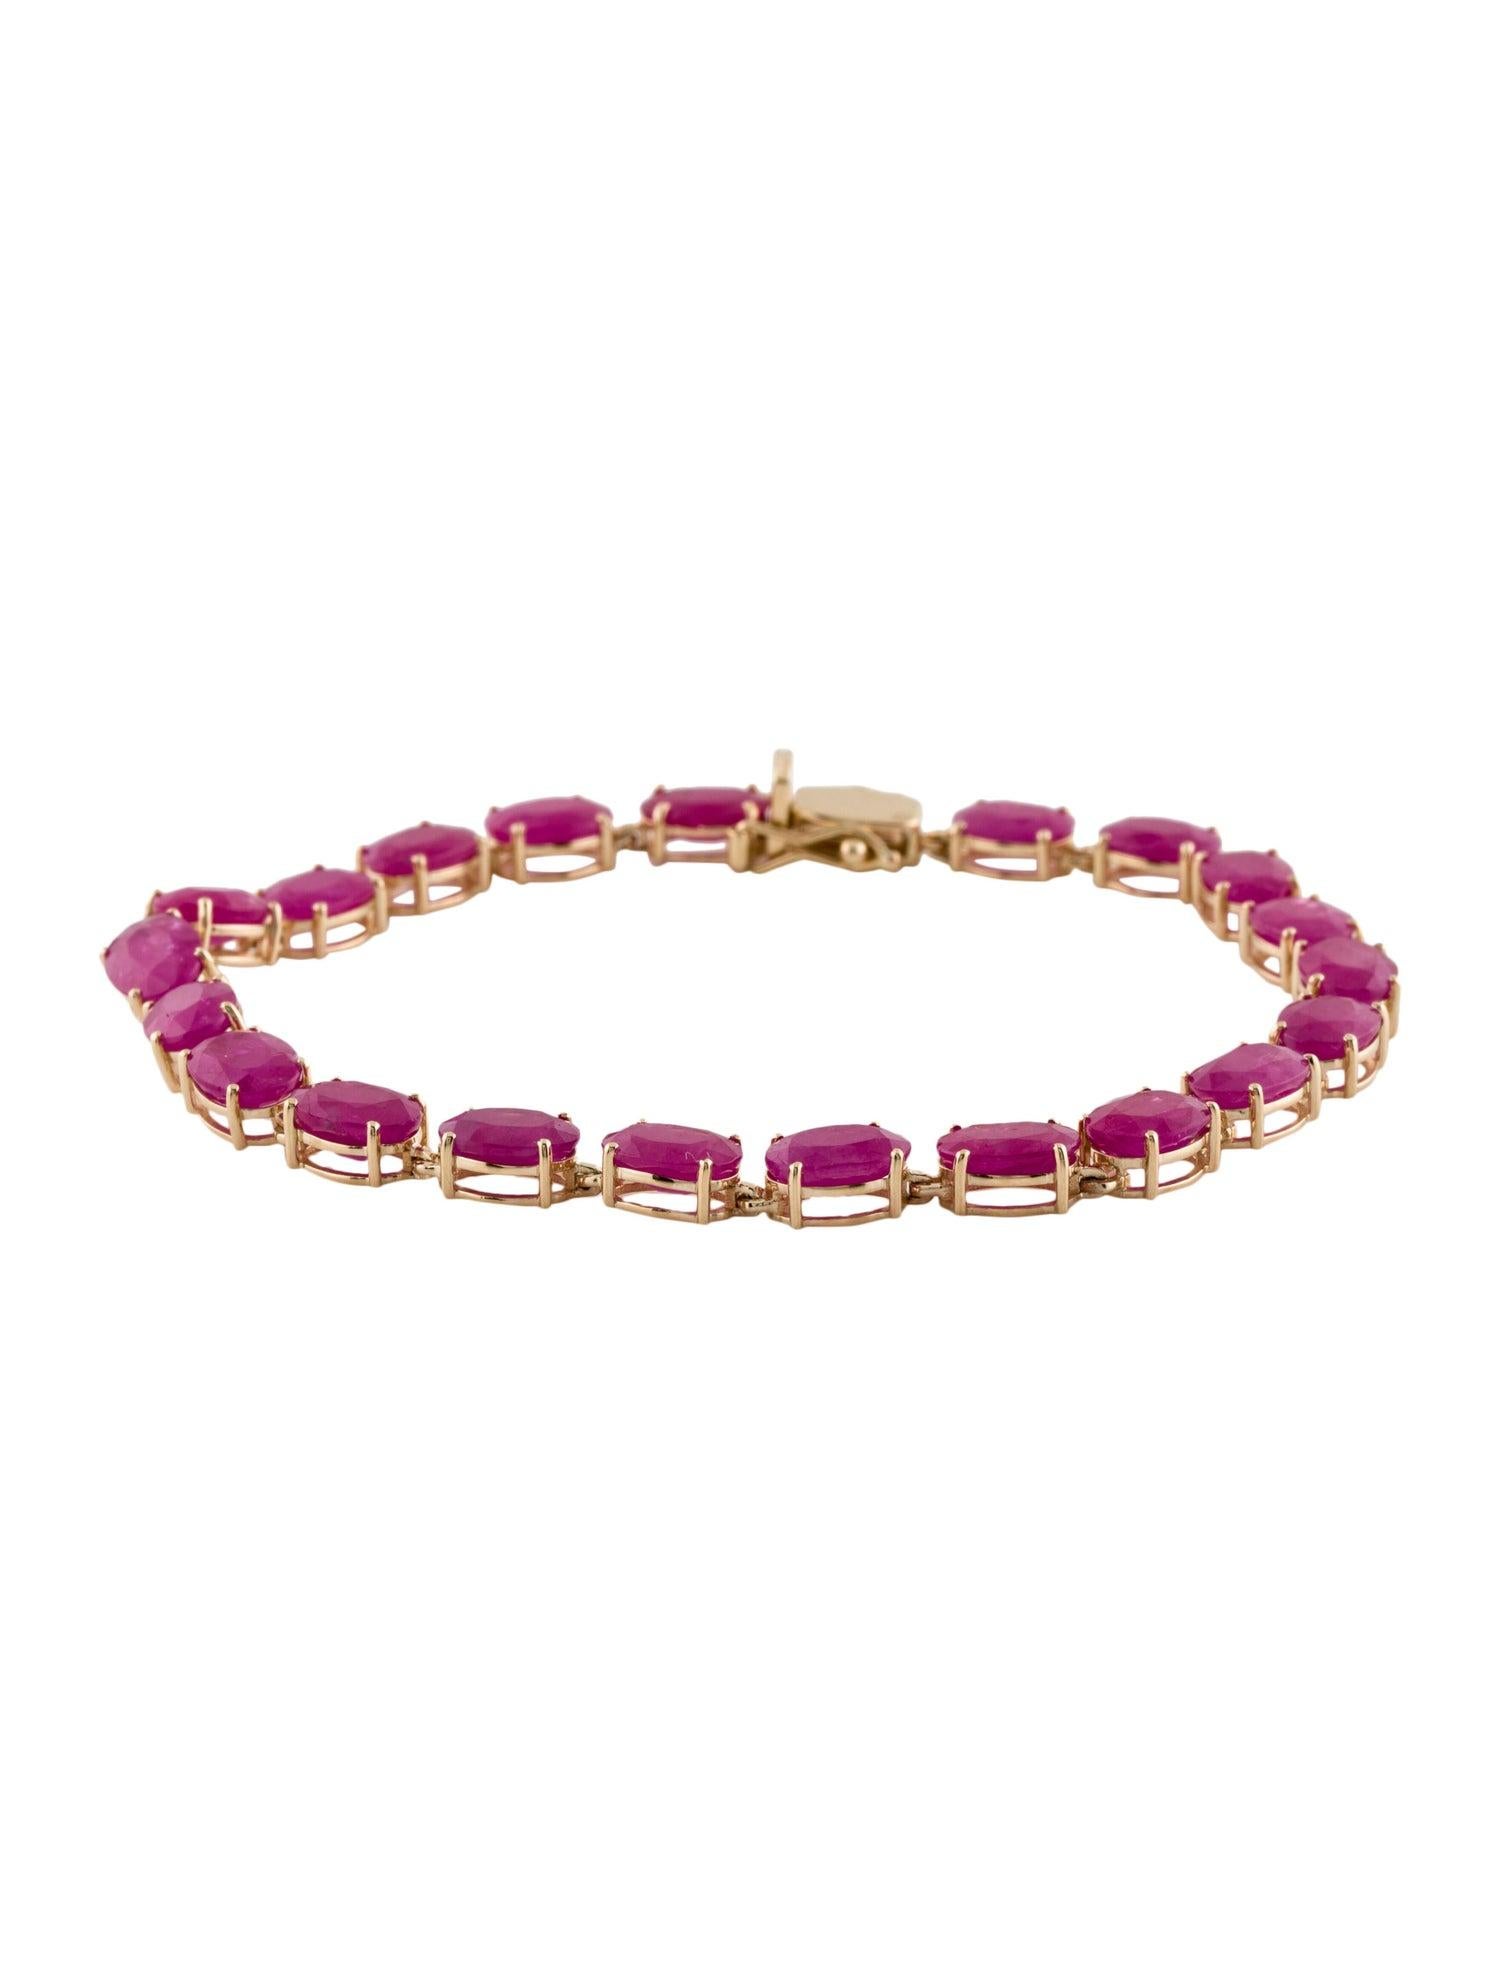 Elegance et passion s'entremêlent dans l'exquis bracelet Blooms of Passion Ruby de Jeweltique. Fabriqué avec le plus grand soin et avec le souci de capturer la beauté vibrante de la nature, ce bracelet est plus qu'un simple bijou - c'est un